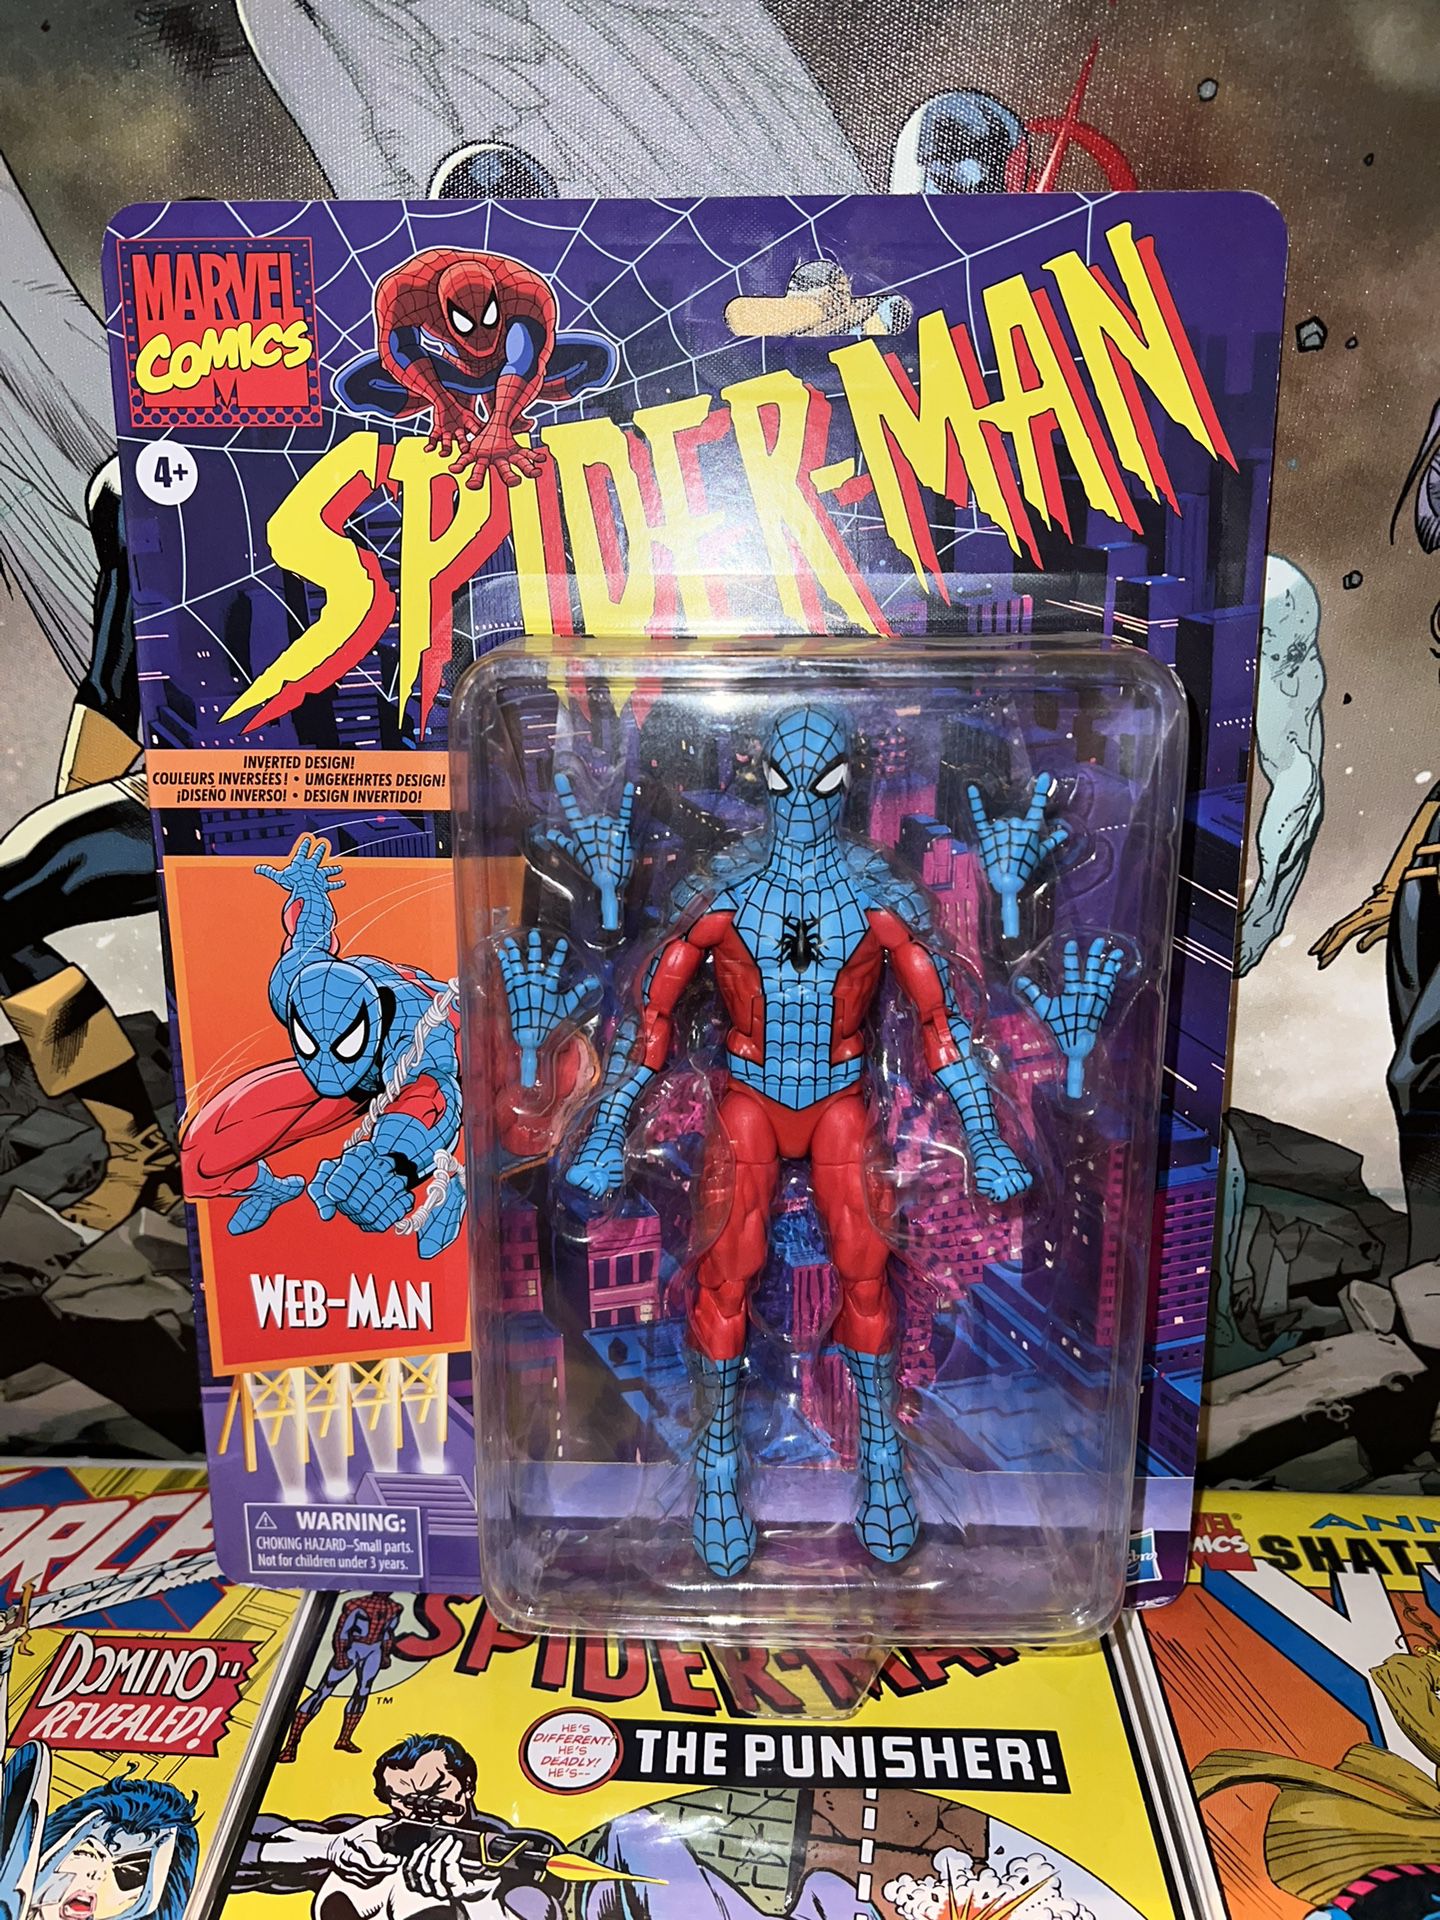 Marvel Legends Spider-Man “Web-Man”